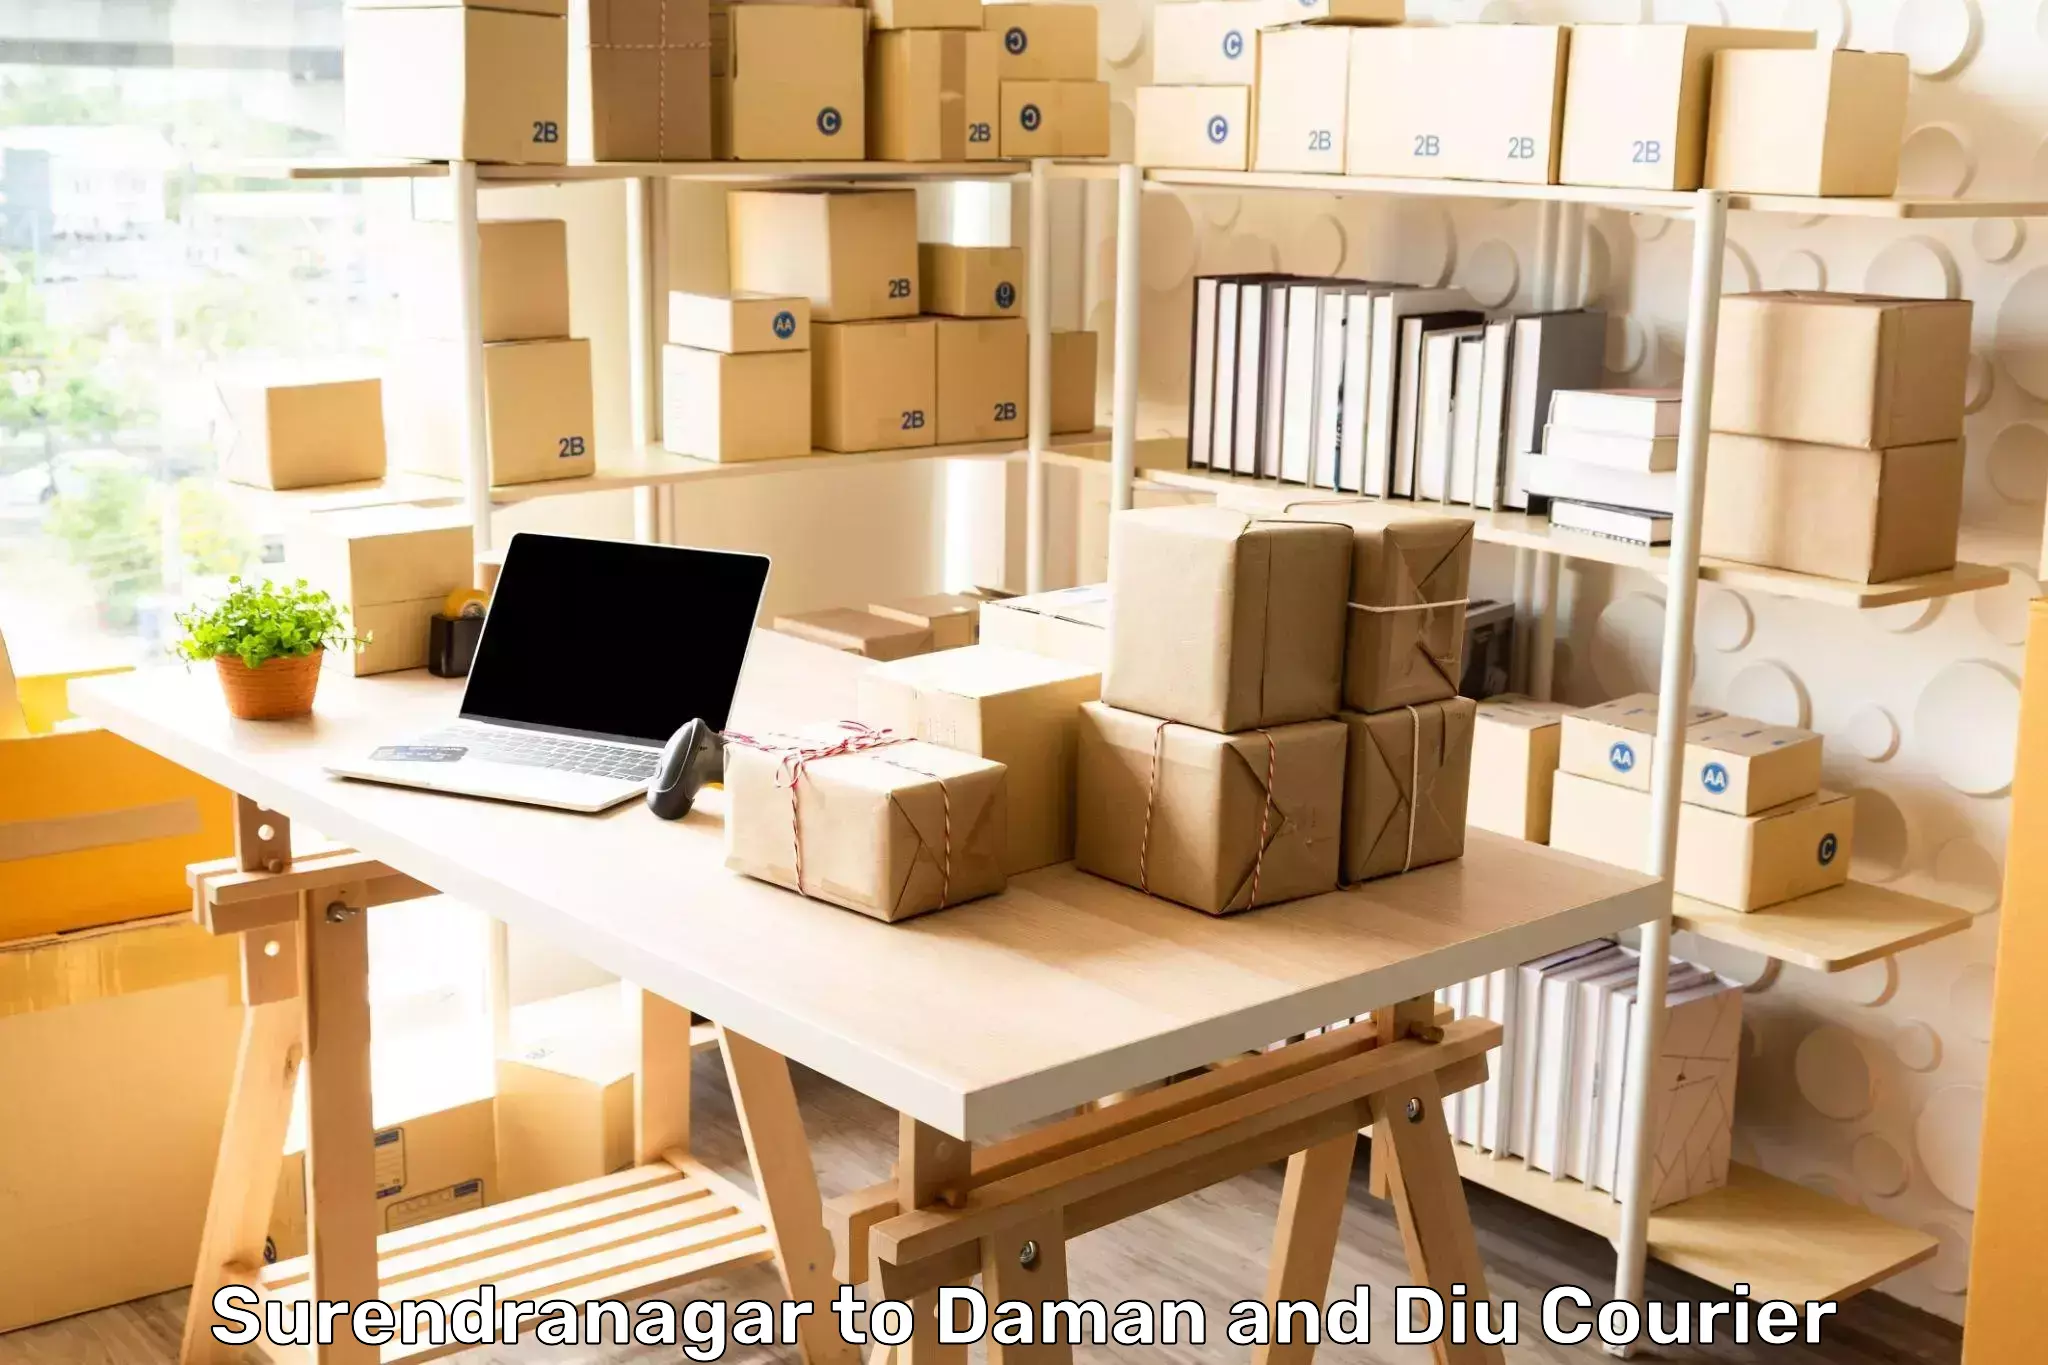 Efficient cargo services Surendranagar to Diu